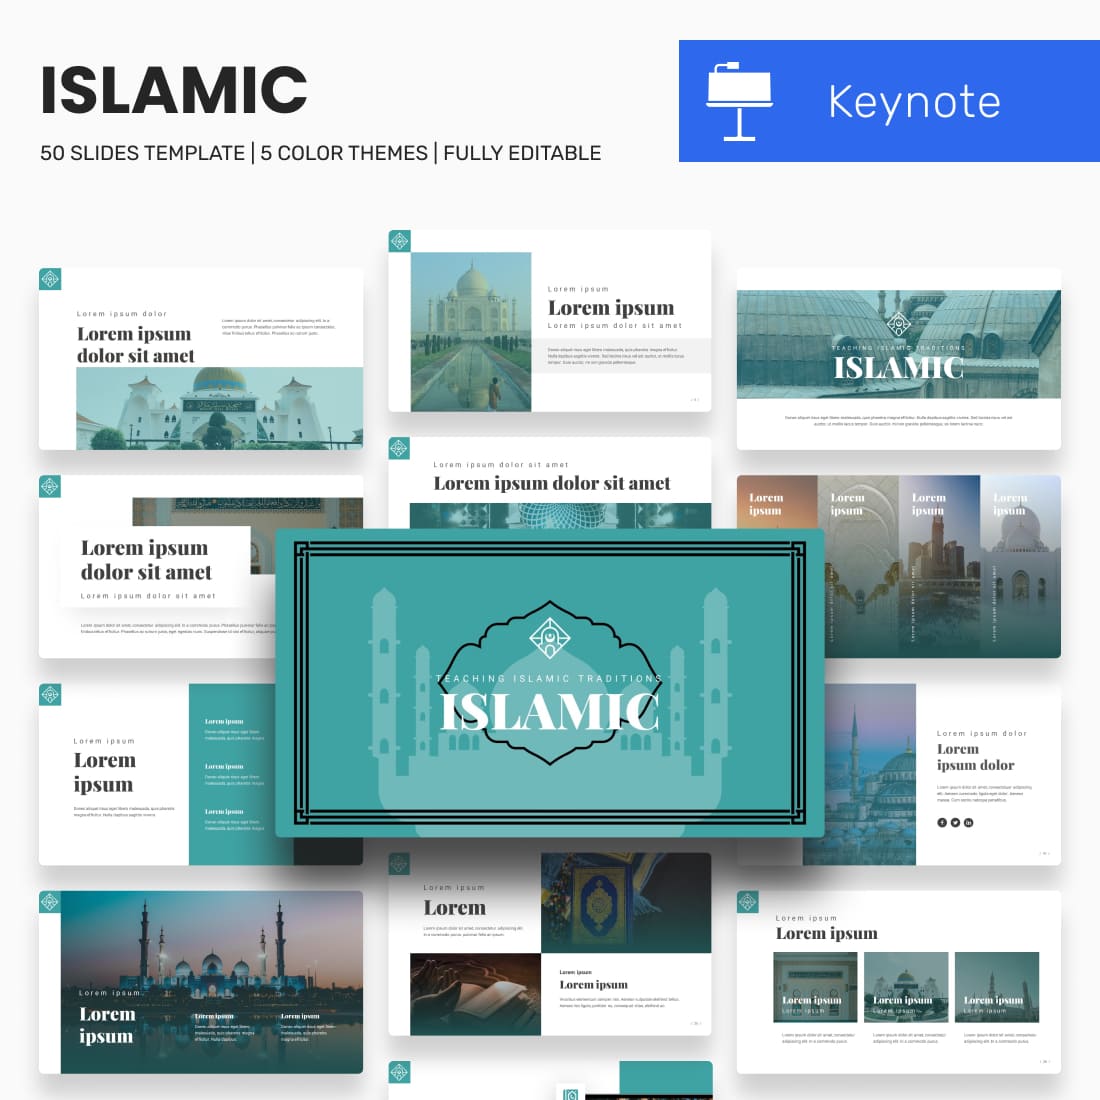 Islamic keynote template.